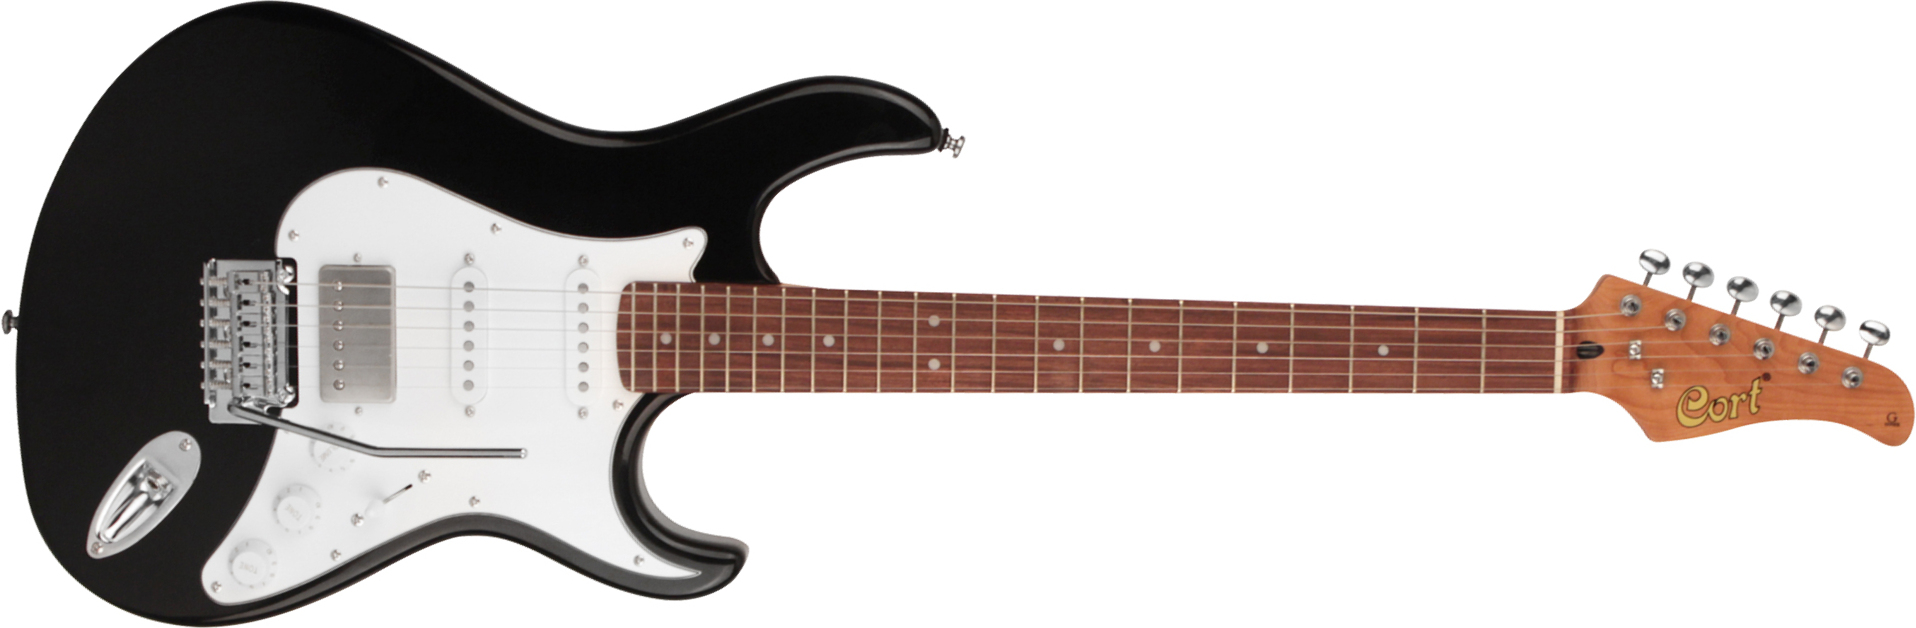 Cort G260cs Hss Trem Pau - Black - Elektrische gitaar in Str-vorm - Main picture